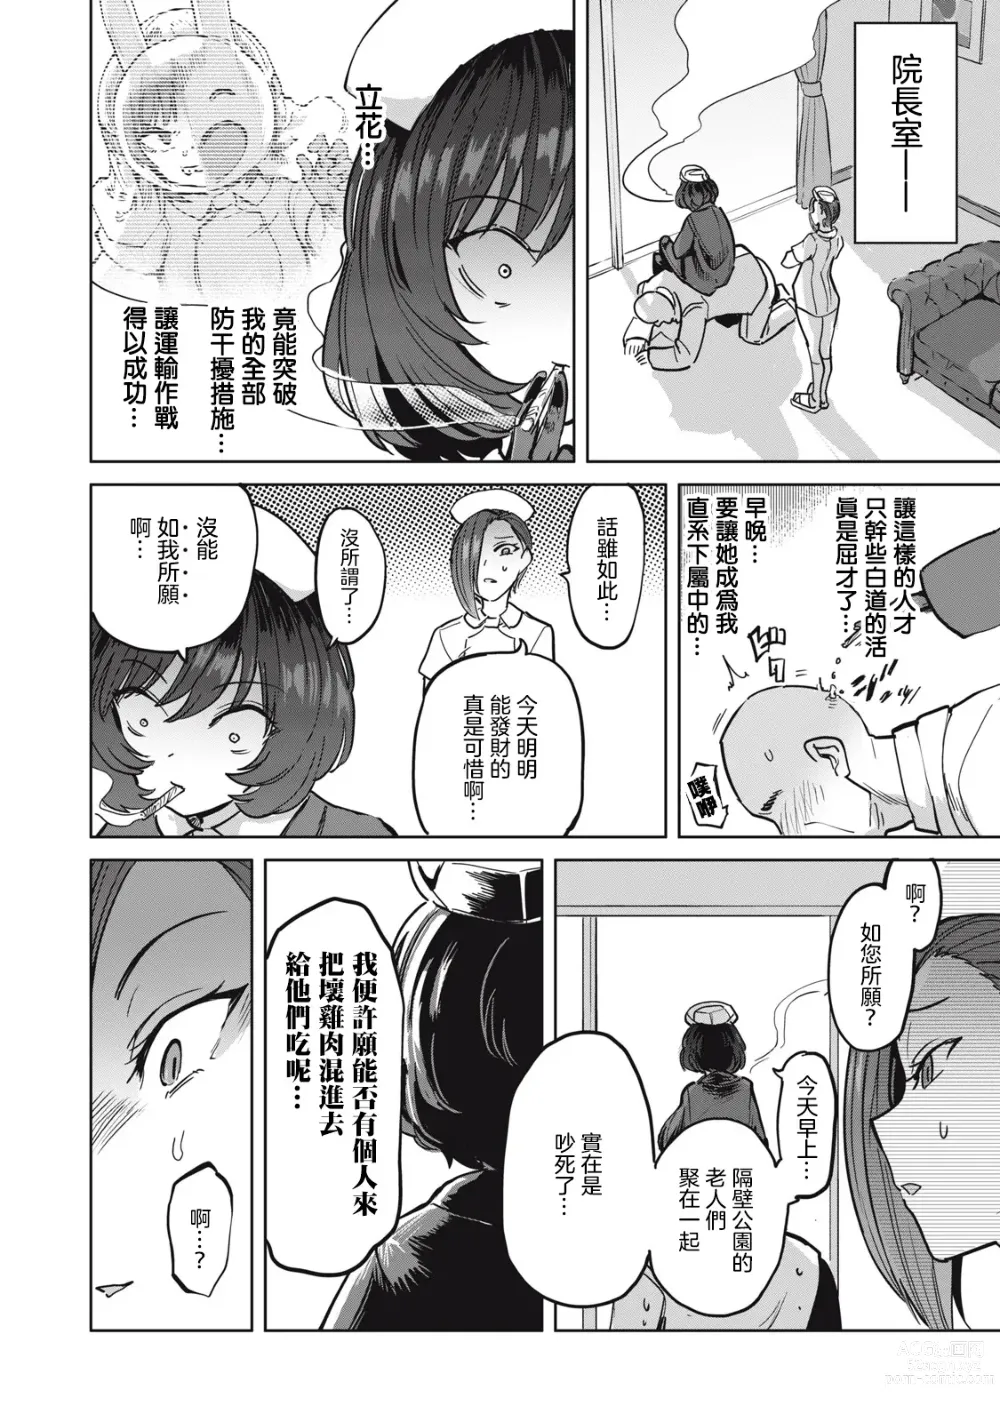 Page 538 of doujinshi Zen Nenrei Ban